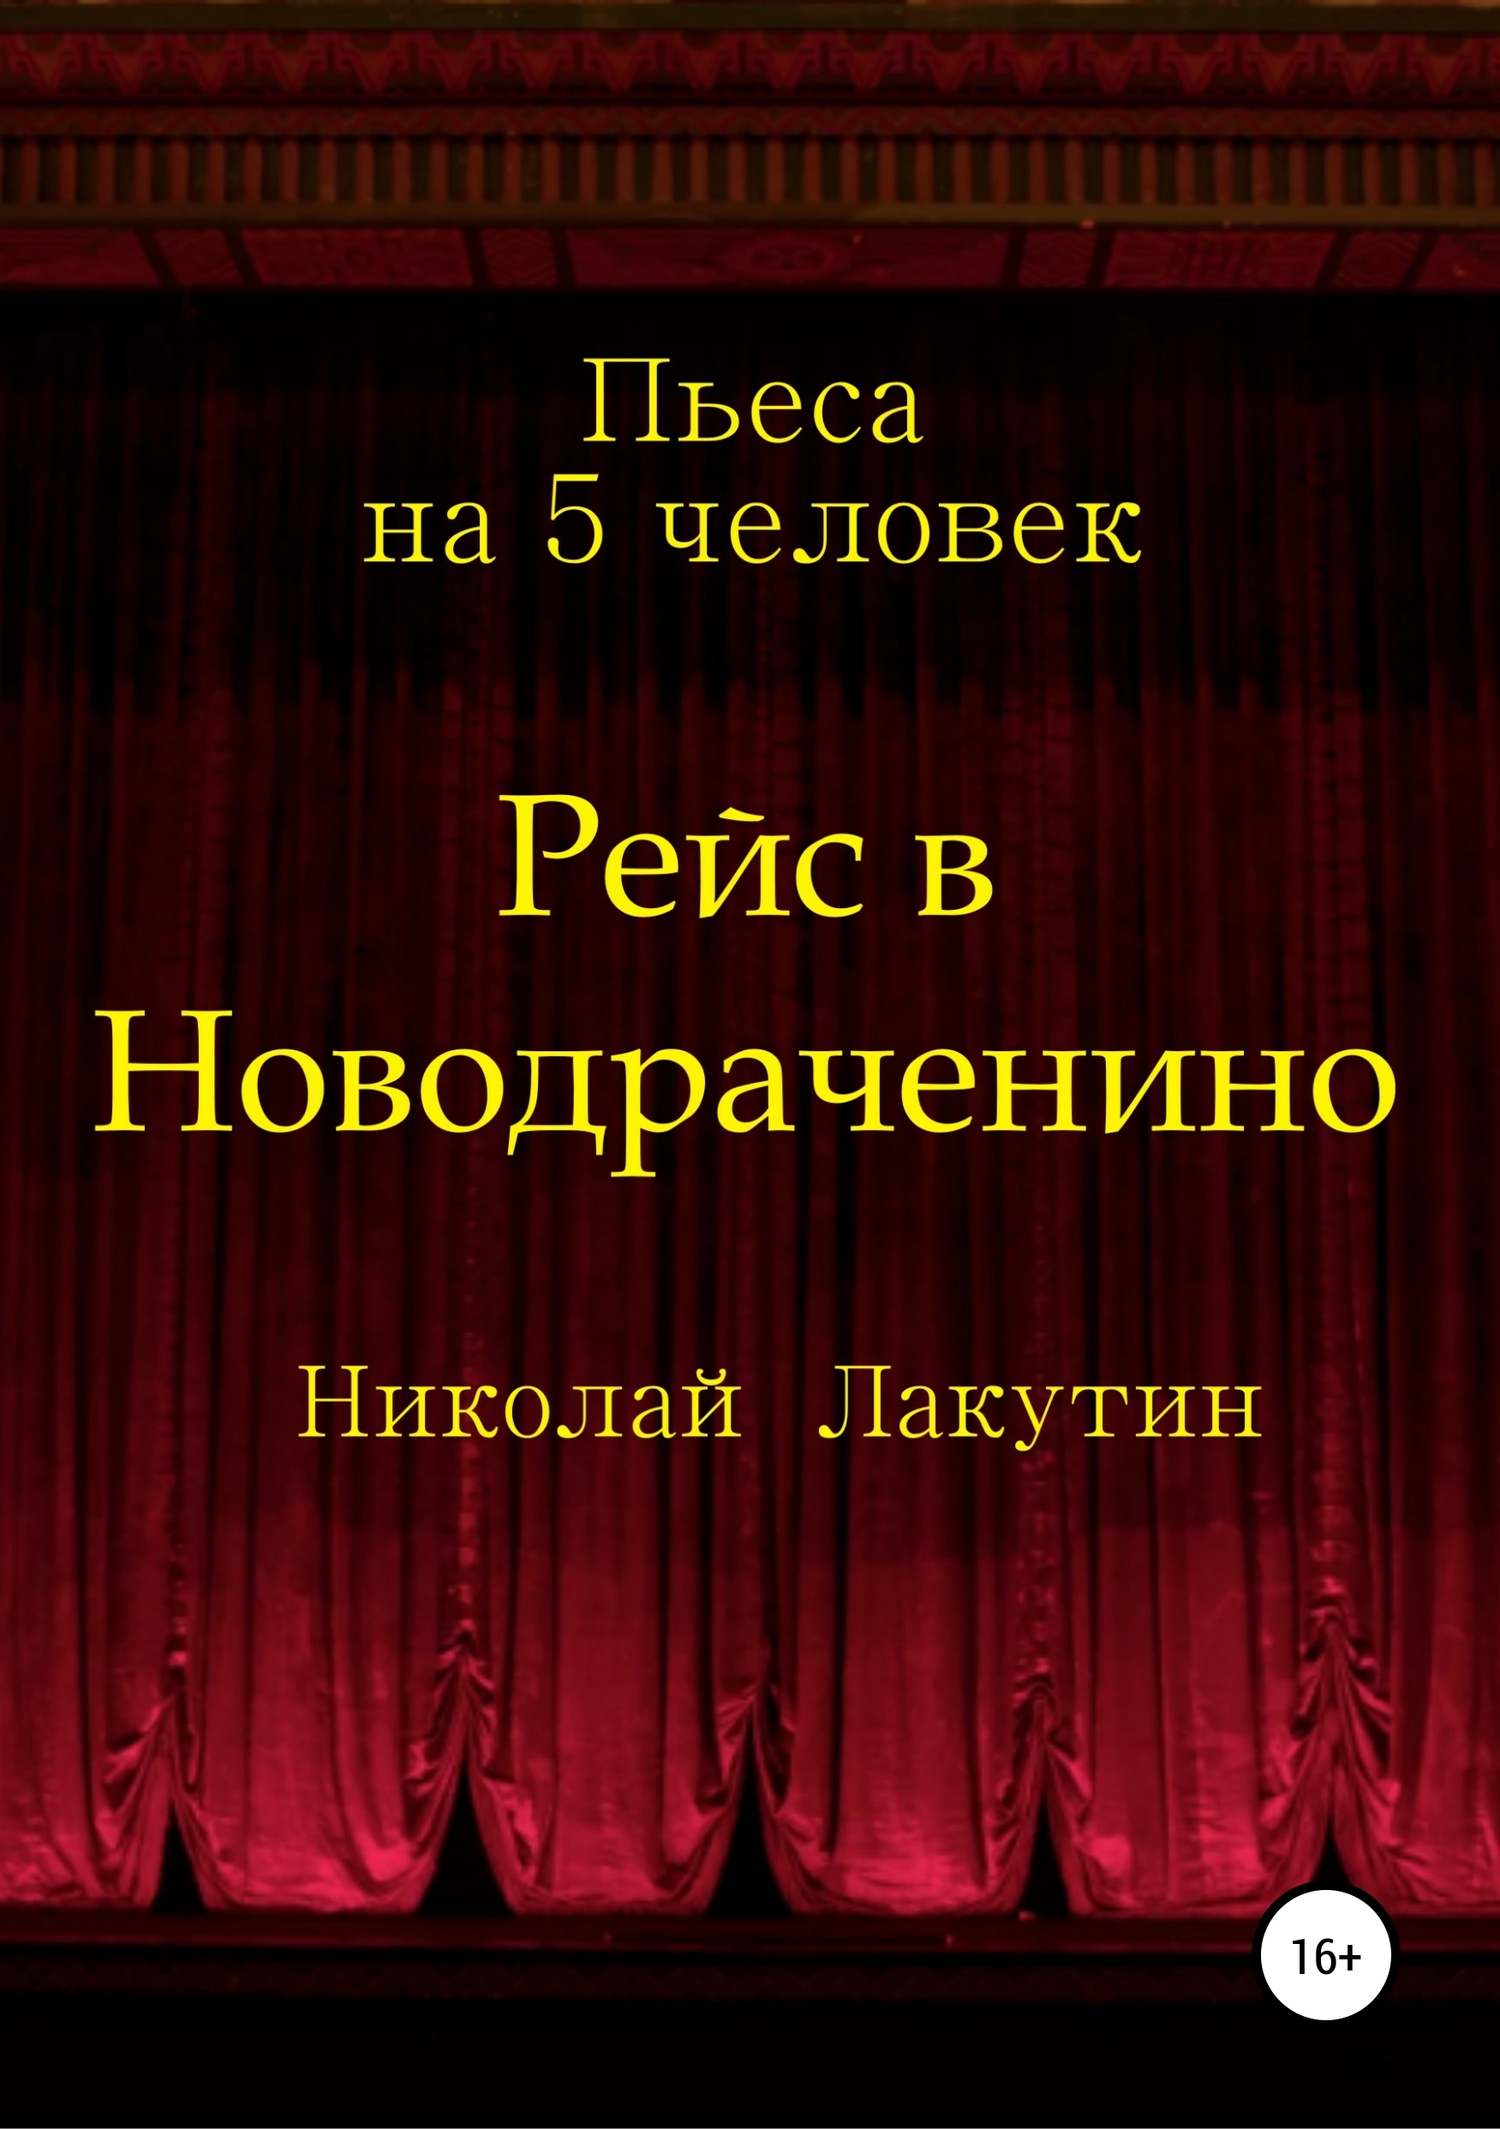 Рейс в Новодраченино. Пьеса на 5 человек (fb2)